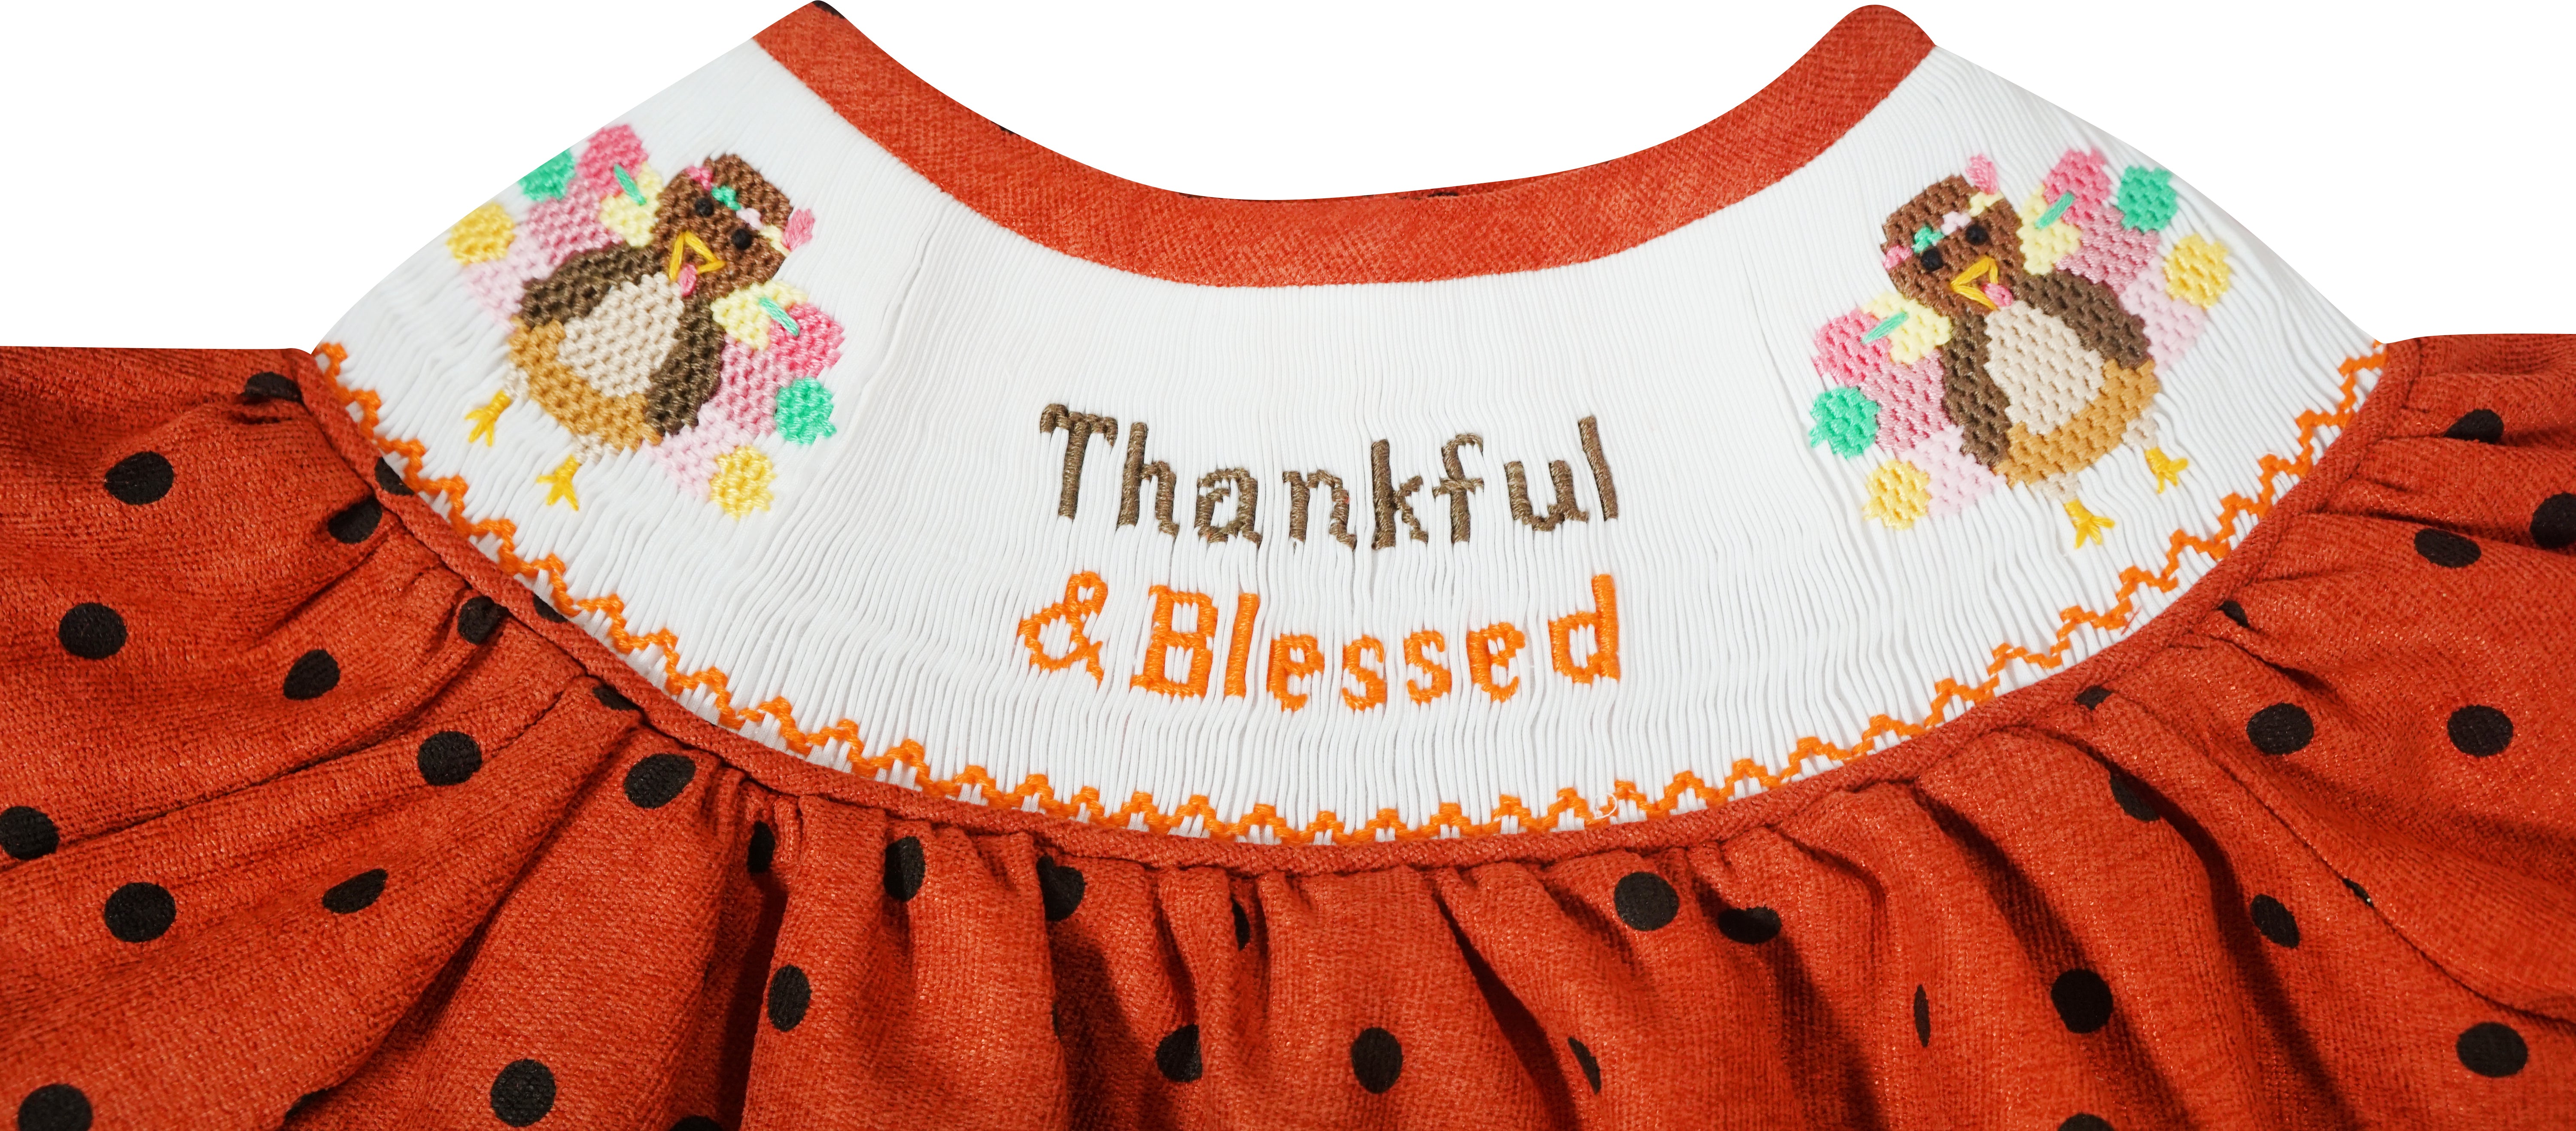 Baby Toddler Little Girls Thanksgiving Thankful & Blessed Hand Smocked Orange Polka Dot Dress - Angeline Kids